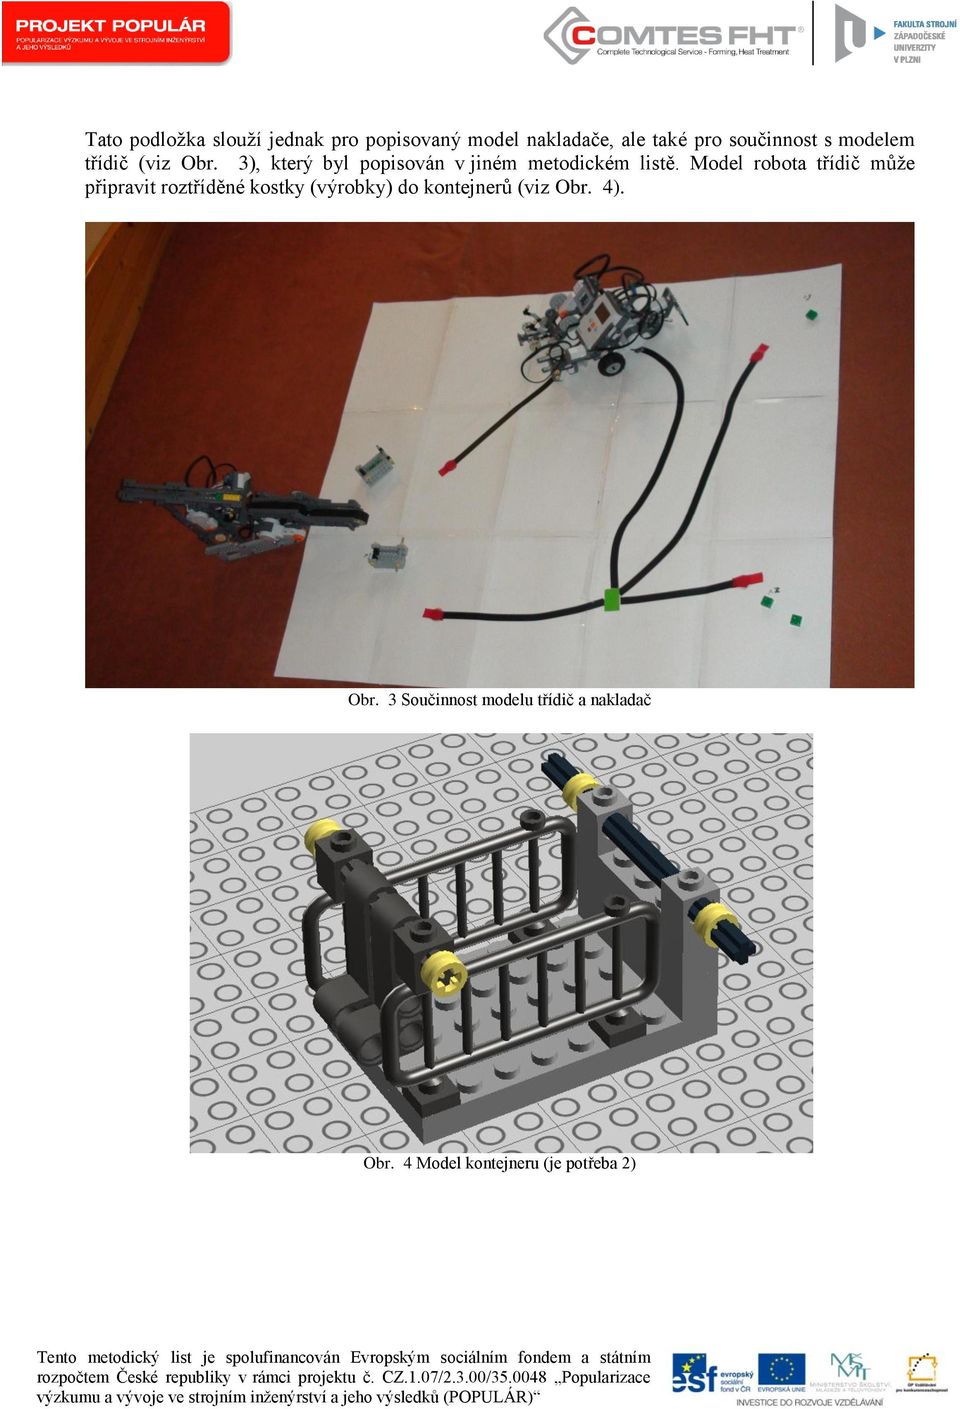 Model robota třídič může připravit roztříděné kostky (výrobky) do kontejnerů (viz